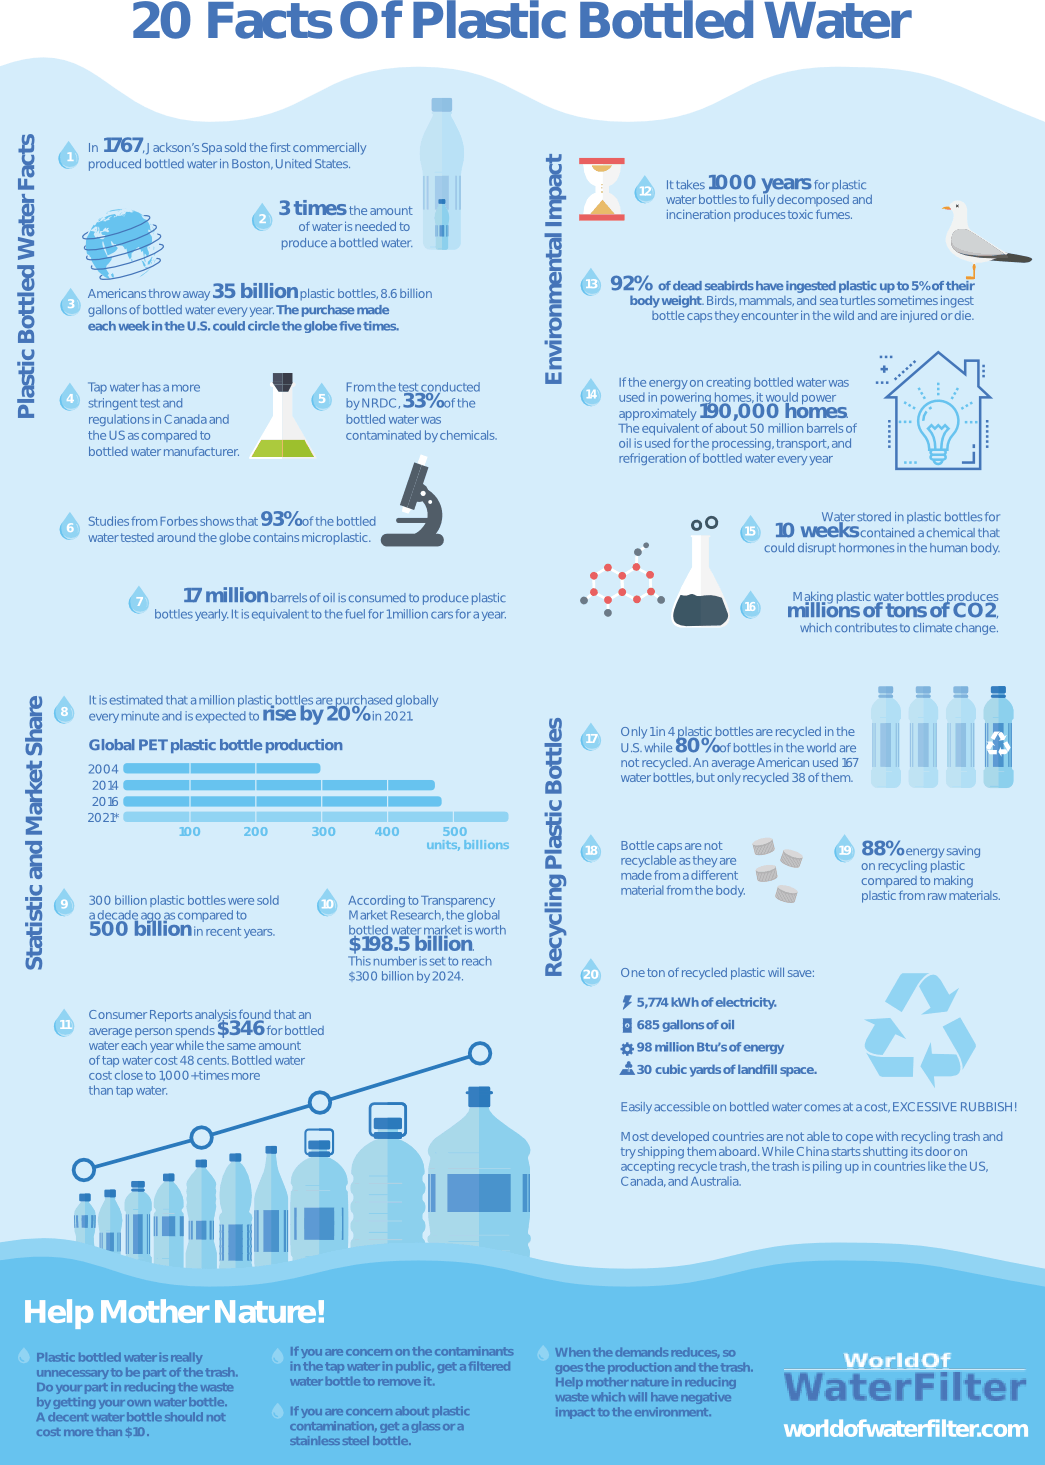 Plastic bottle facts